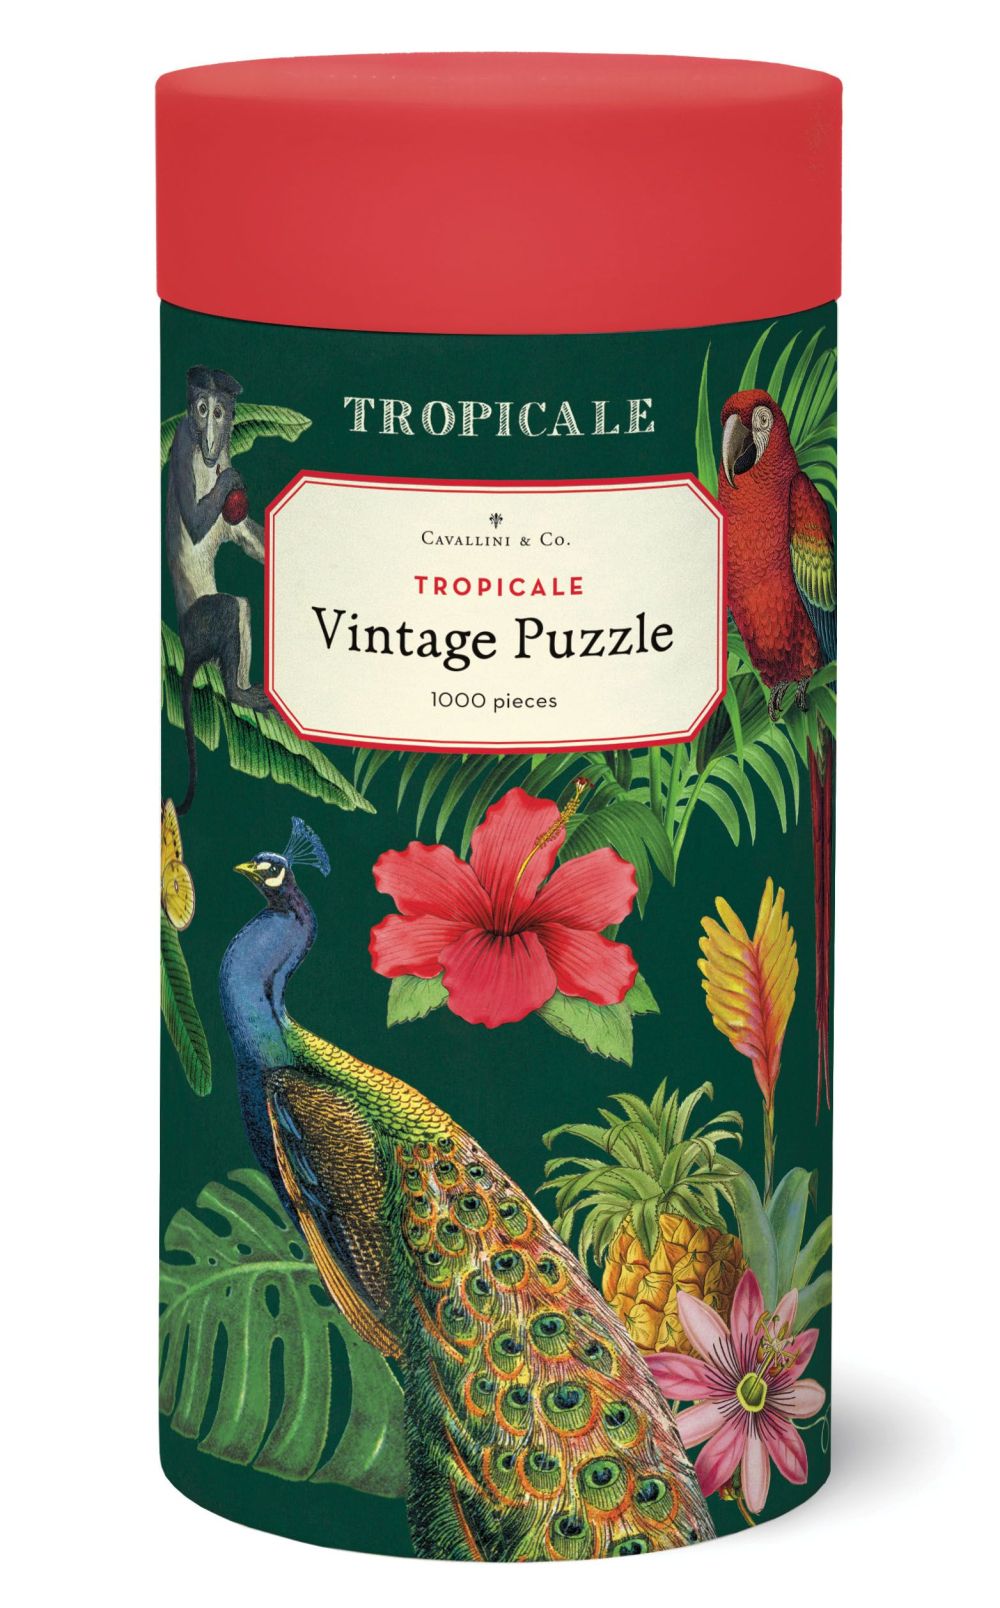 Cavallini & Co Tropicale 1000 Piece Vintage Puzzle